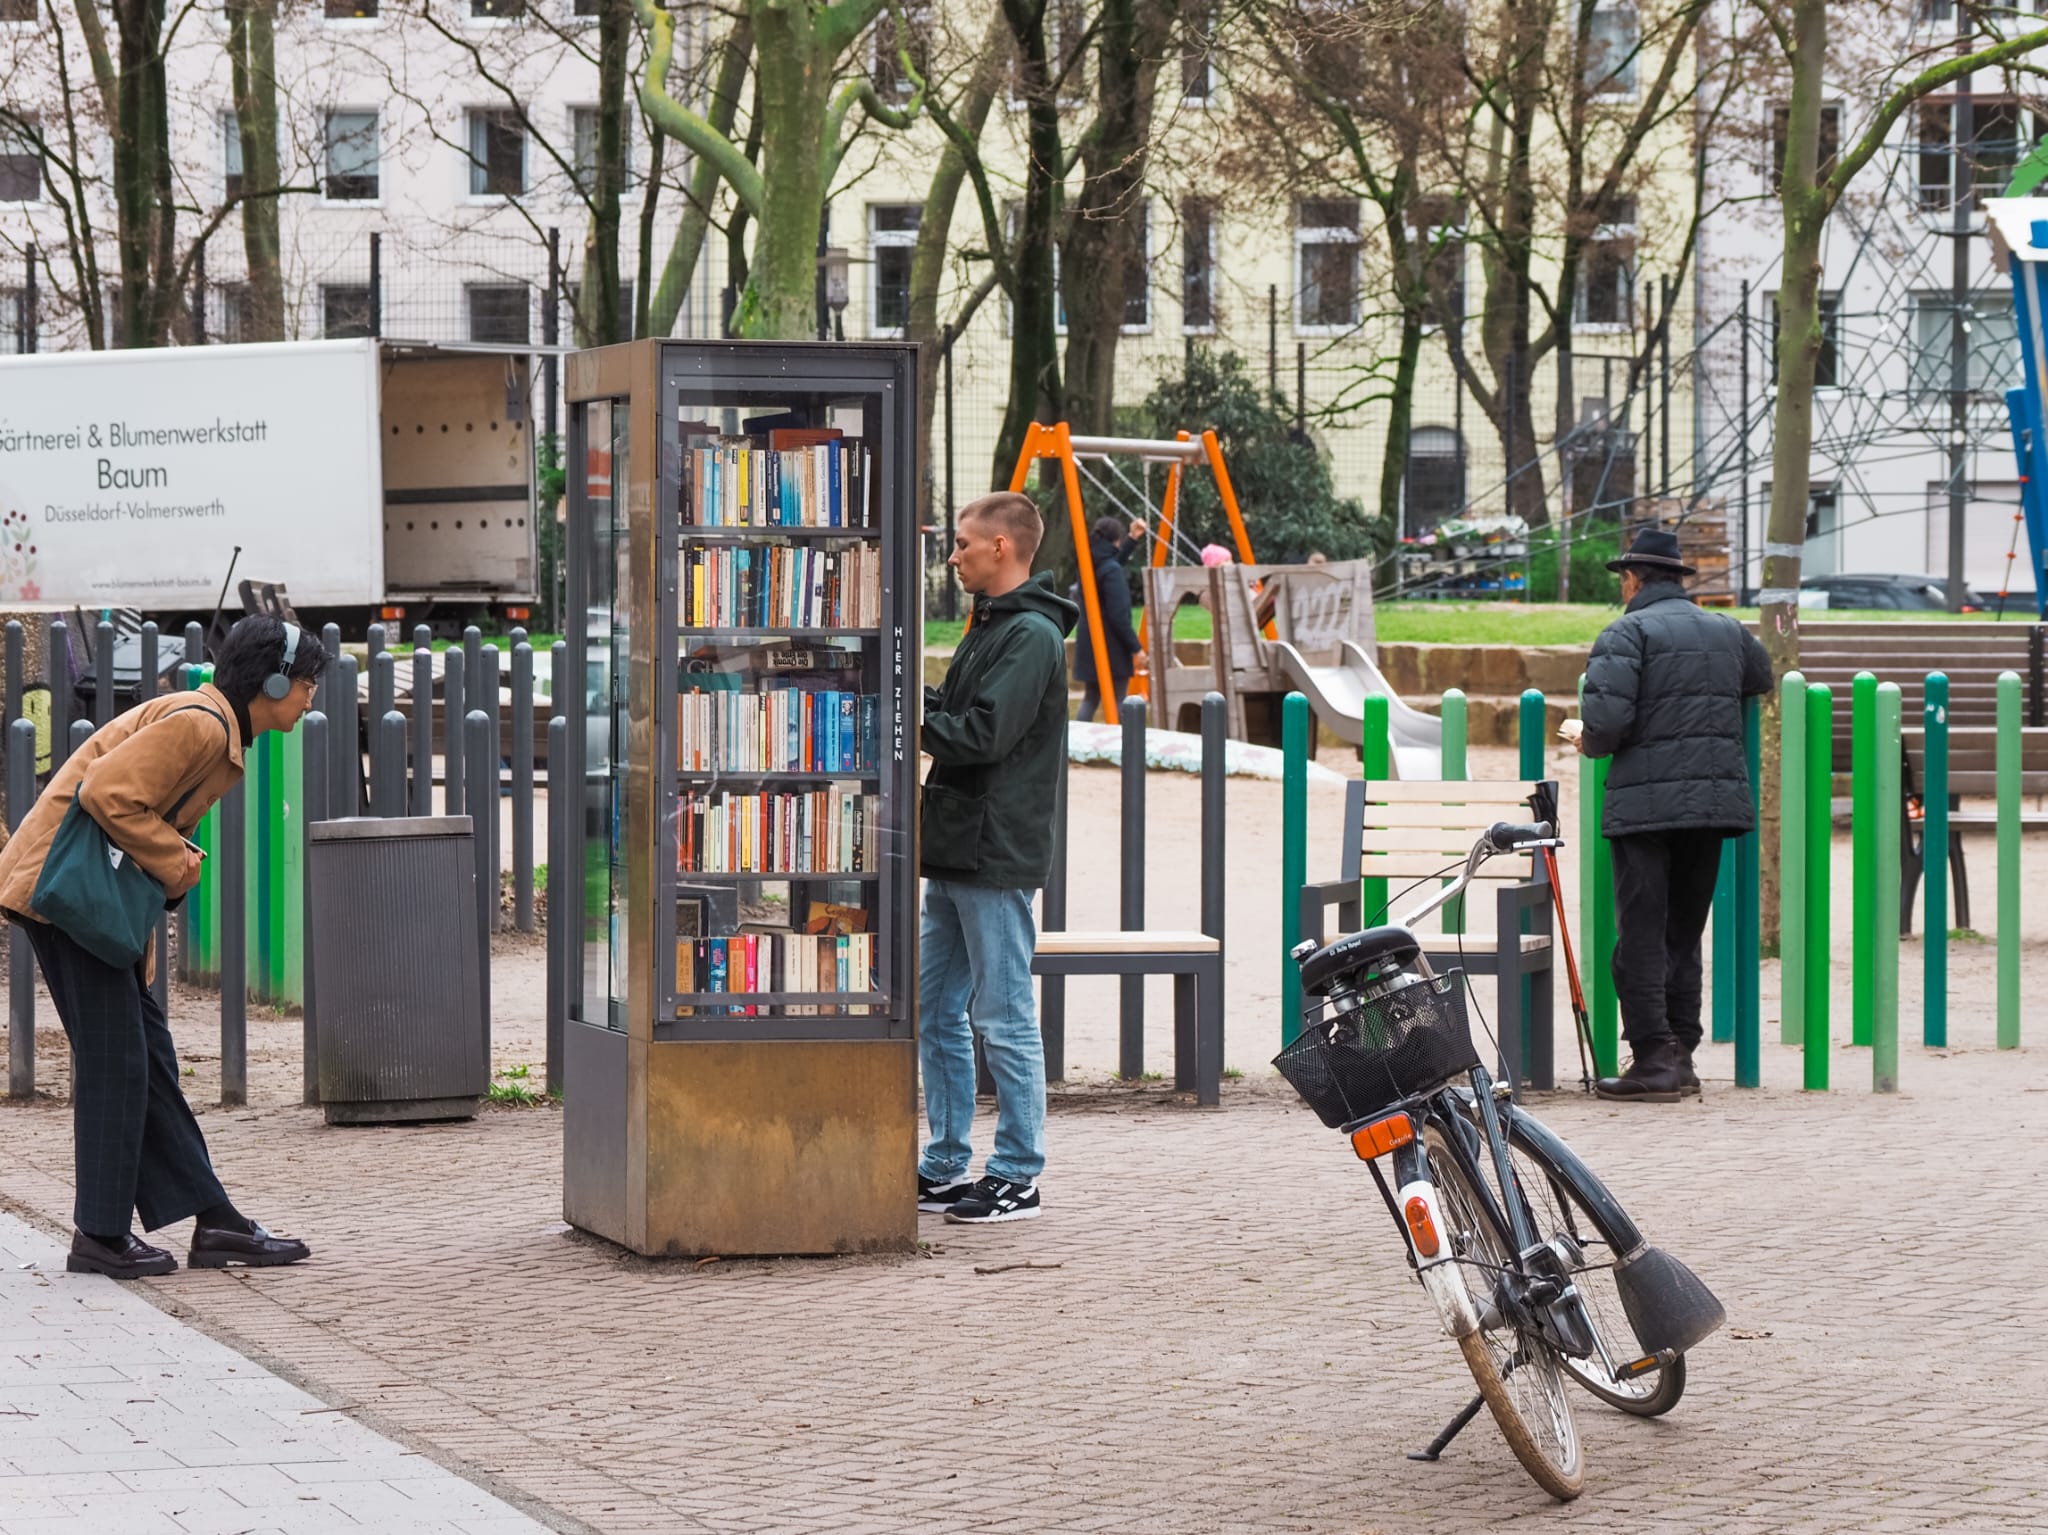 Overal in Düsseldorf vind je deze bibliotheekkasten, ook in onze favoriete wijk